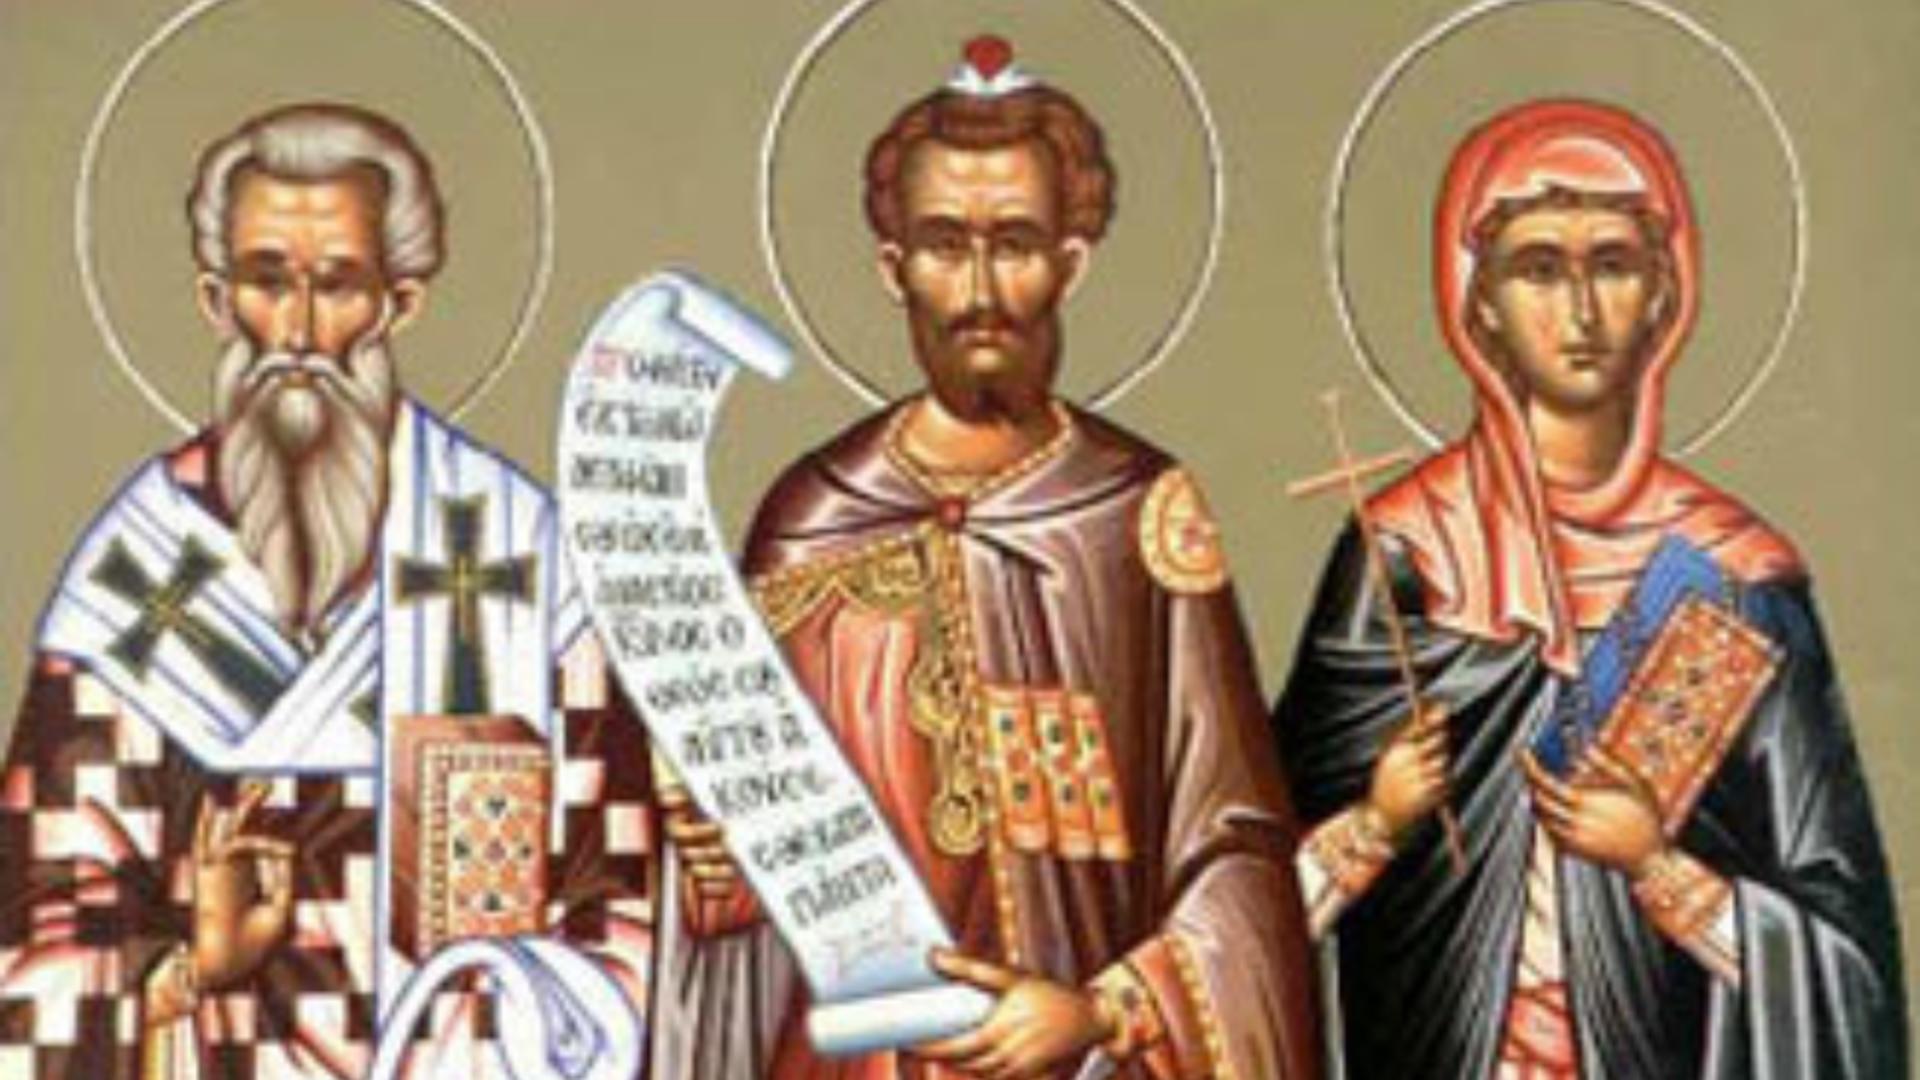 SĂRBĂTOARE 4 septembrie: Mari sfinți pomeniți astăzi în calendarul ortodox. Zi cu importanță deosebită